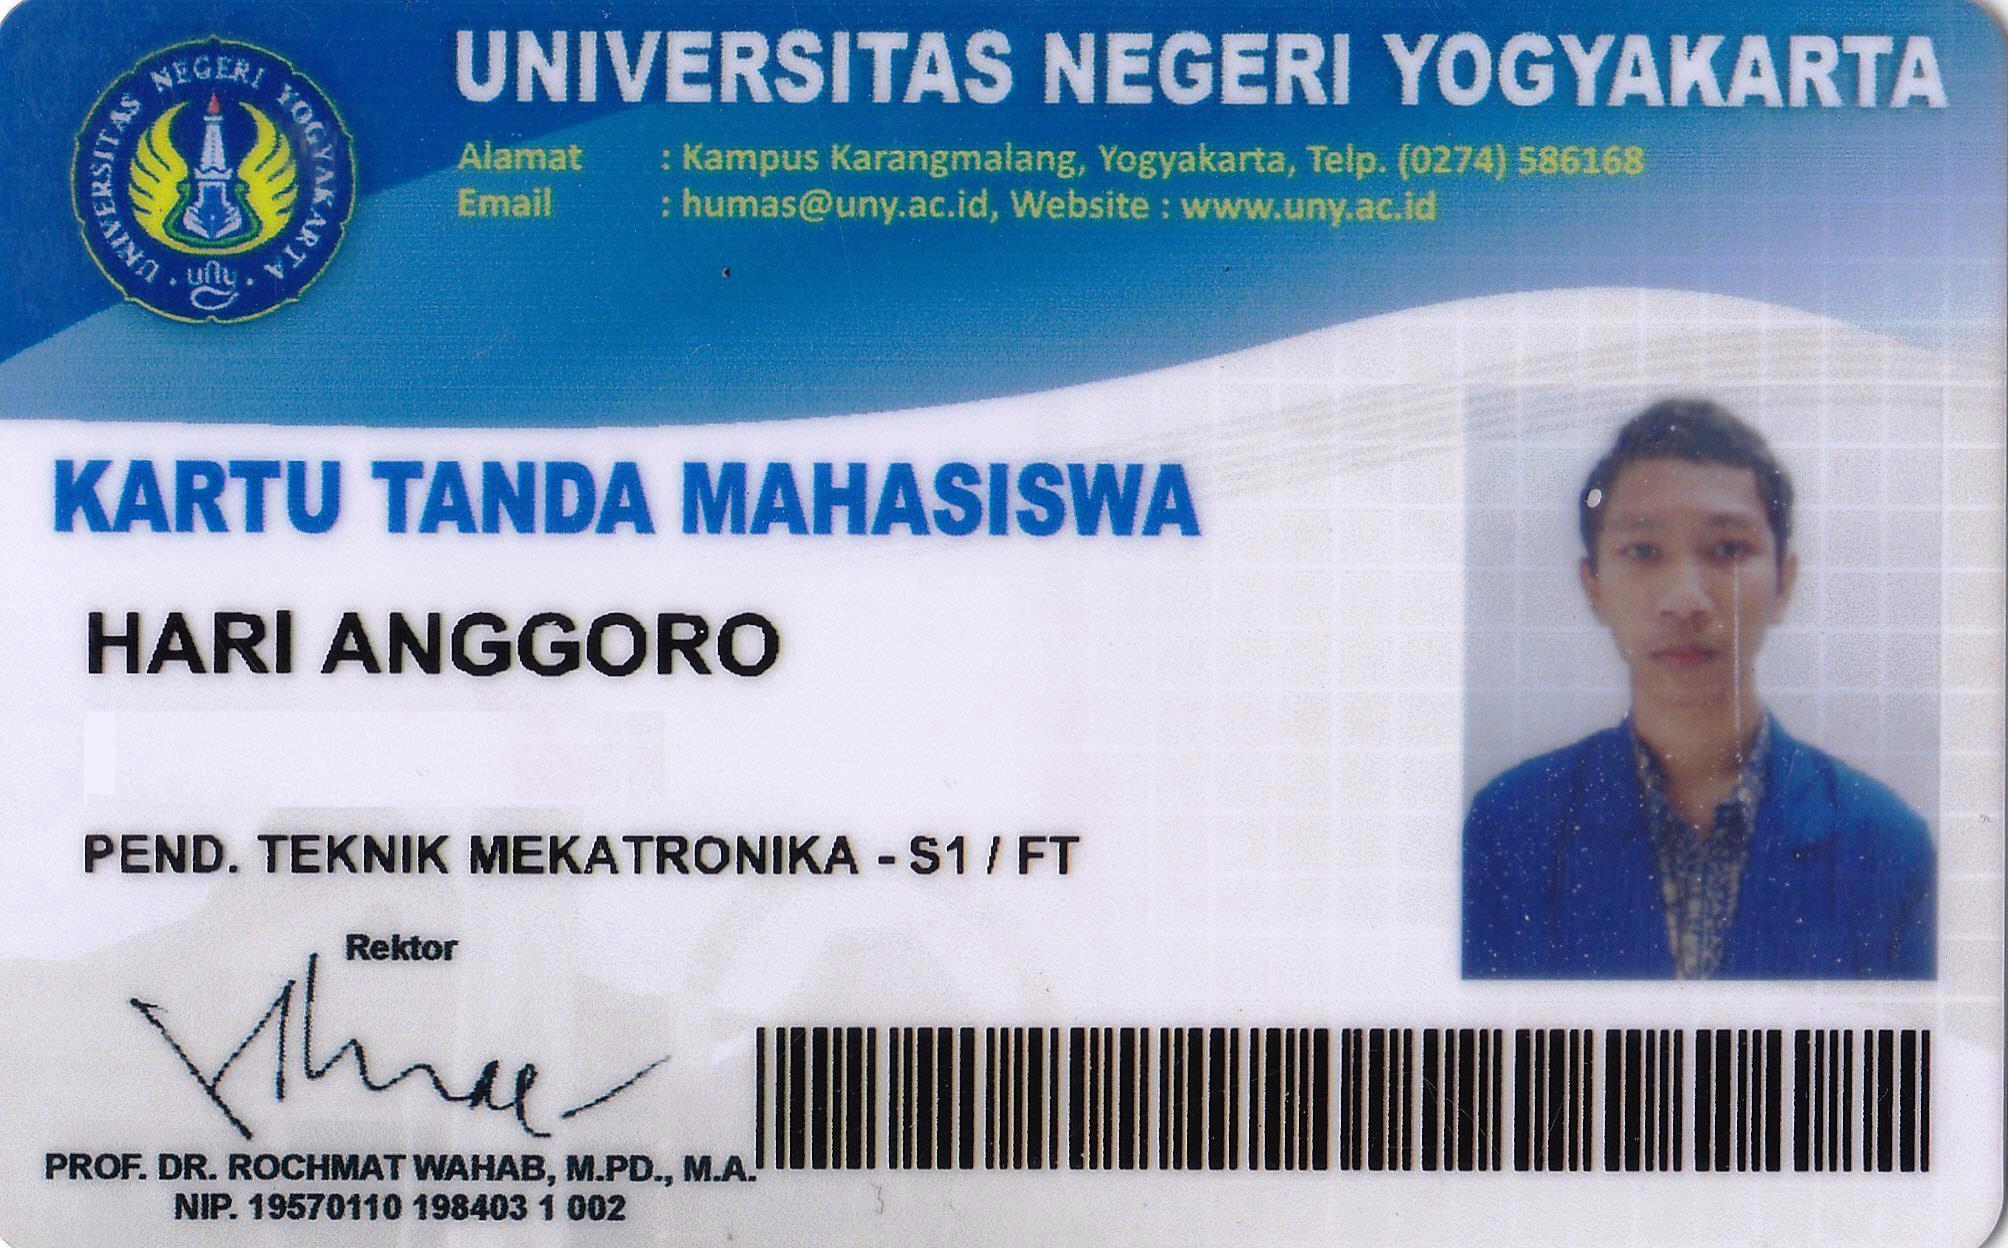 Lulusan 2013 masuk pada Jurusan Fakultas Teknik – Mekatronika menembus Seleksi Mahasiswa Perguruan Tinggi Negeri Universitas Negeri Yogyakarta UNY